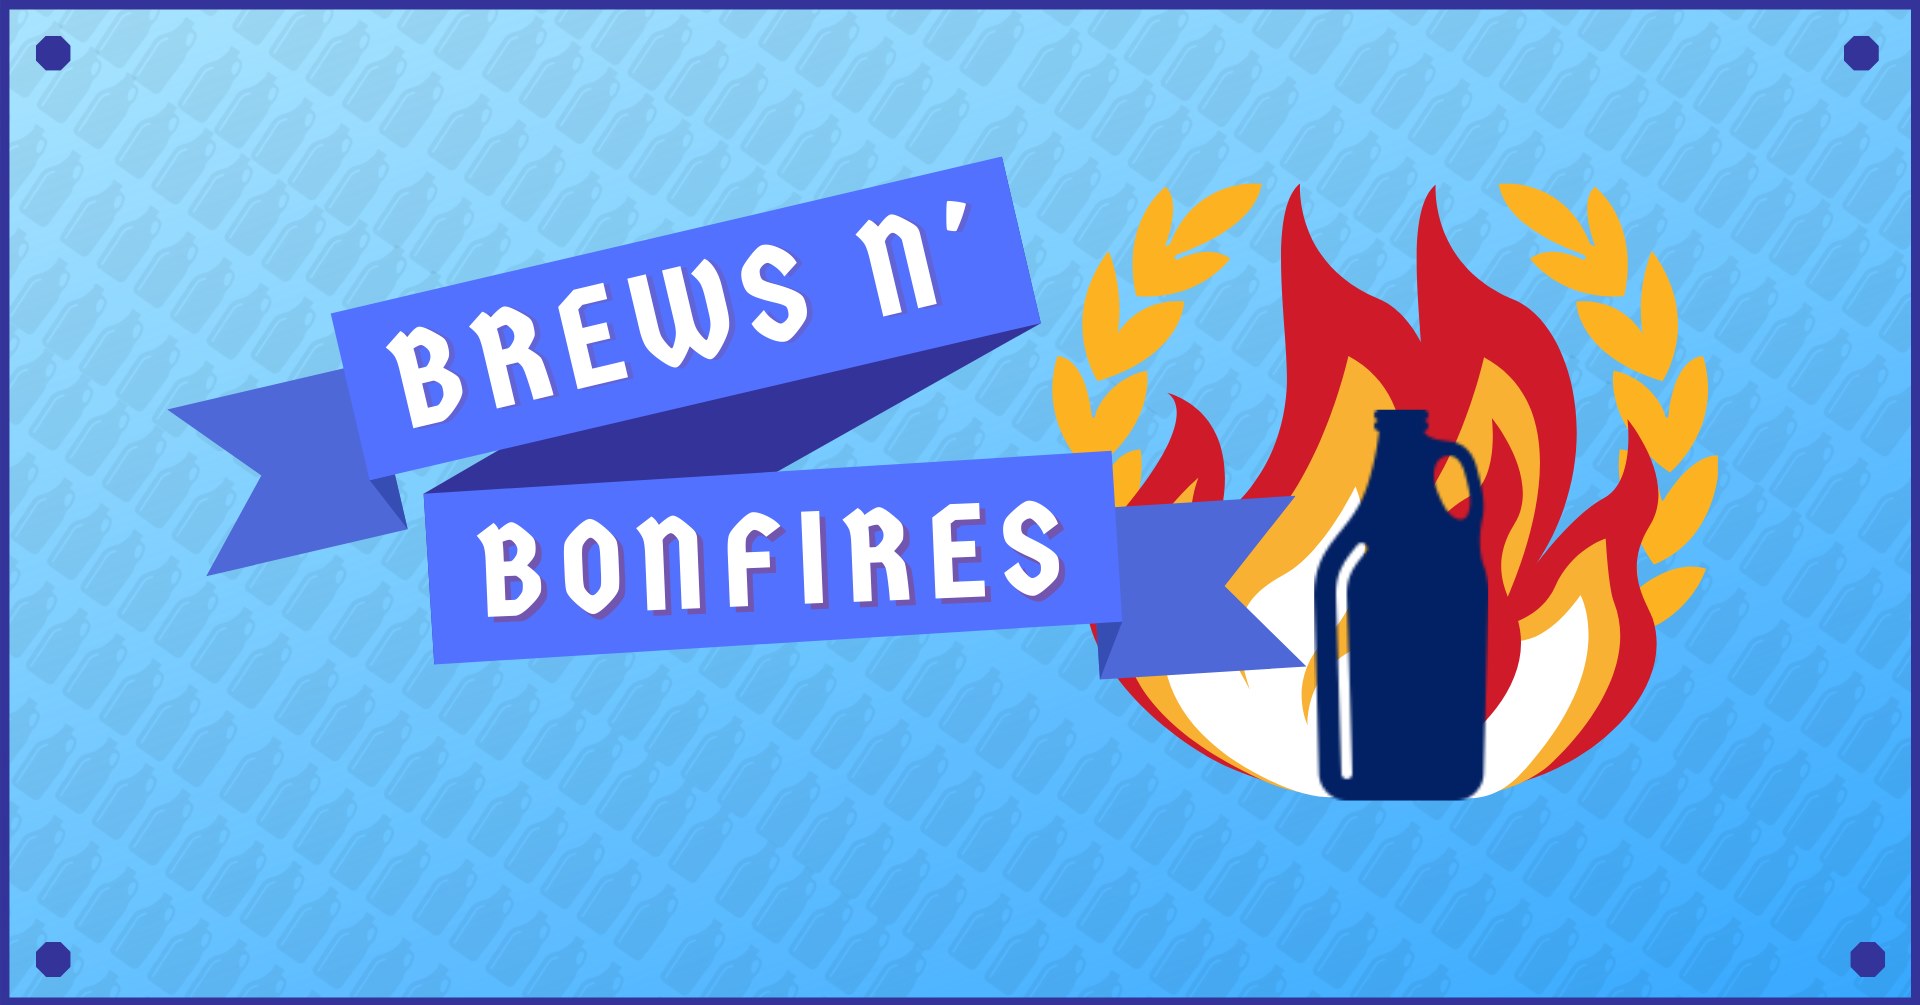 Brews n' Bonfires this Saturday in Caras Park